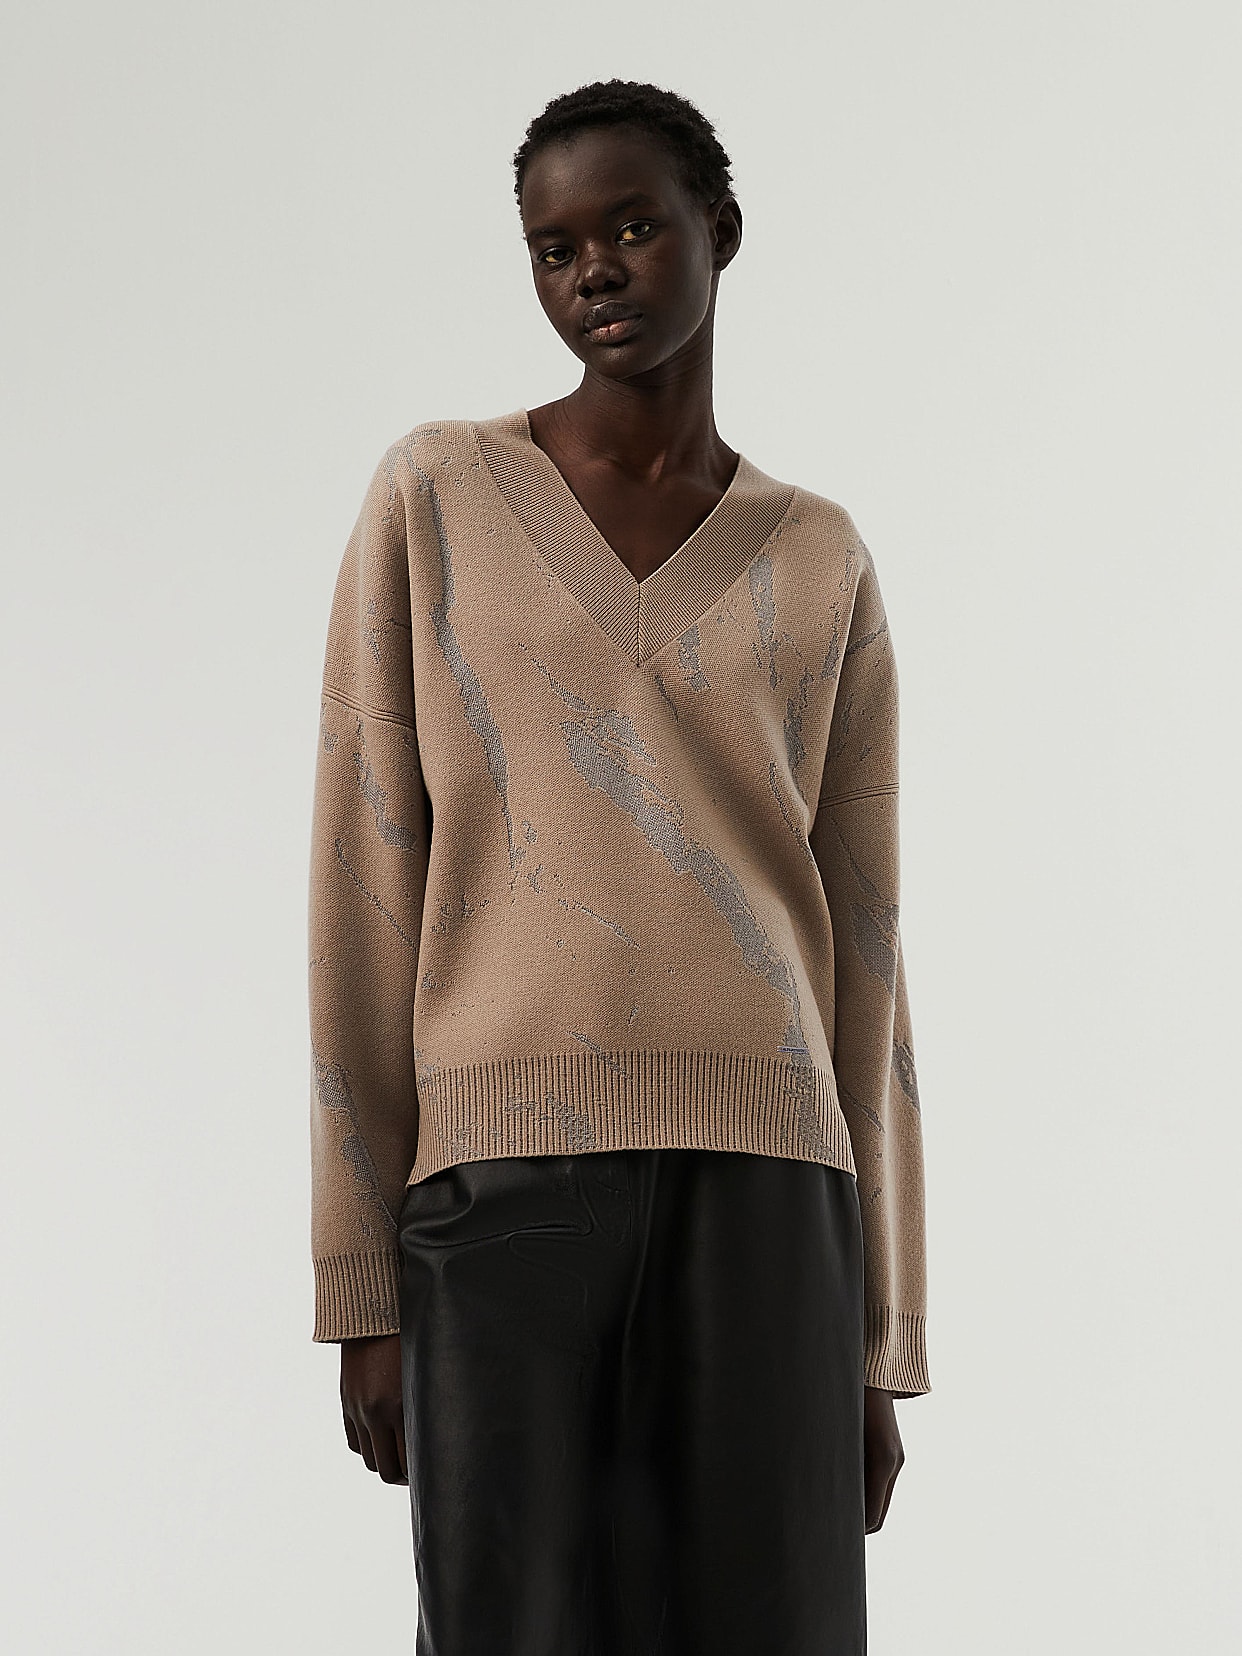 Marble Jacquard Knit V-Neck Sweater, FEMES V1.Y7.02, Brown / Beige